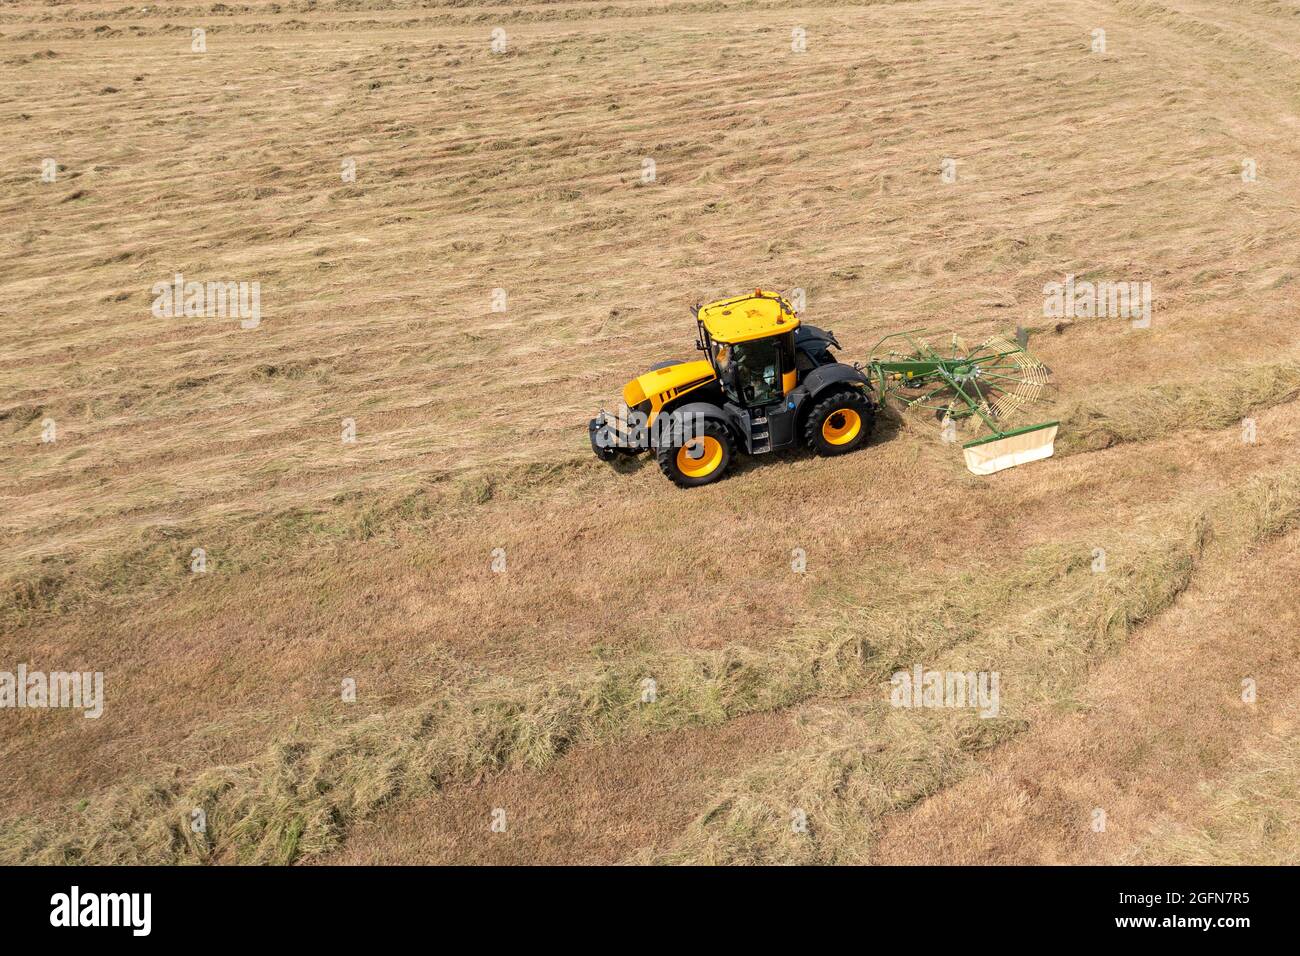 Trattore giallo che traina un rastrello rotante per fieno in un campo di vegetazione tagliata Foto Stock